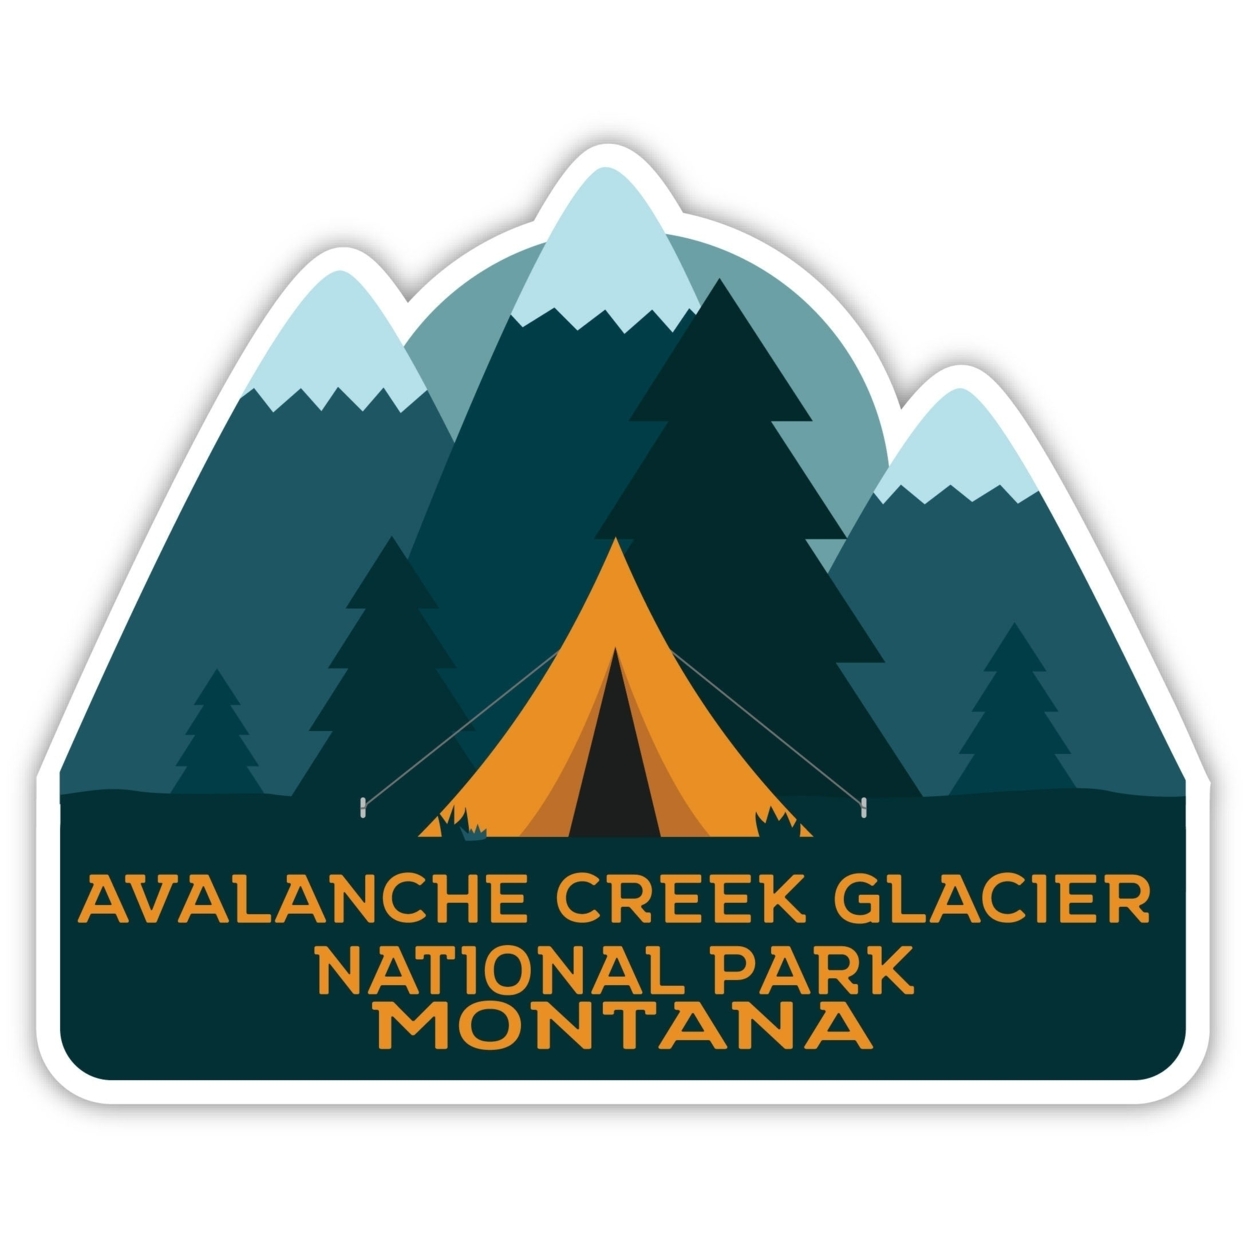 Avalanche Creek Glacier National Park Montana Souvenir Decorative Stickers (Choose Theme And Size) - Single Unit, 12-Inch, Tent